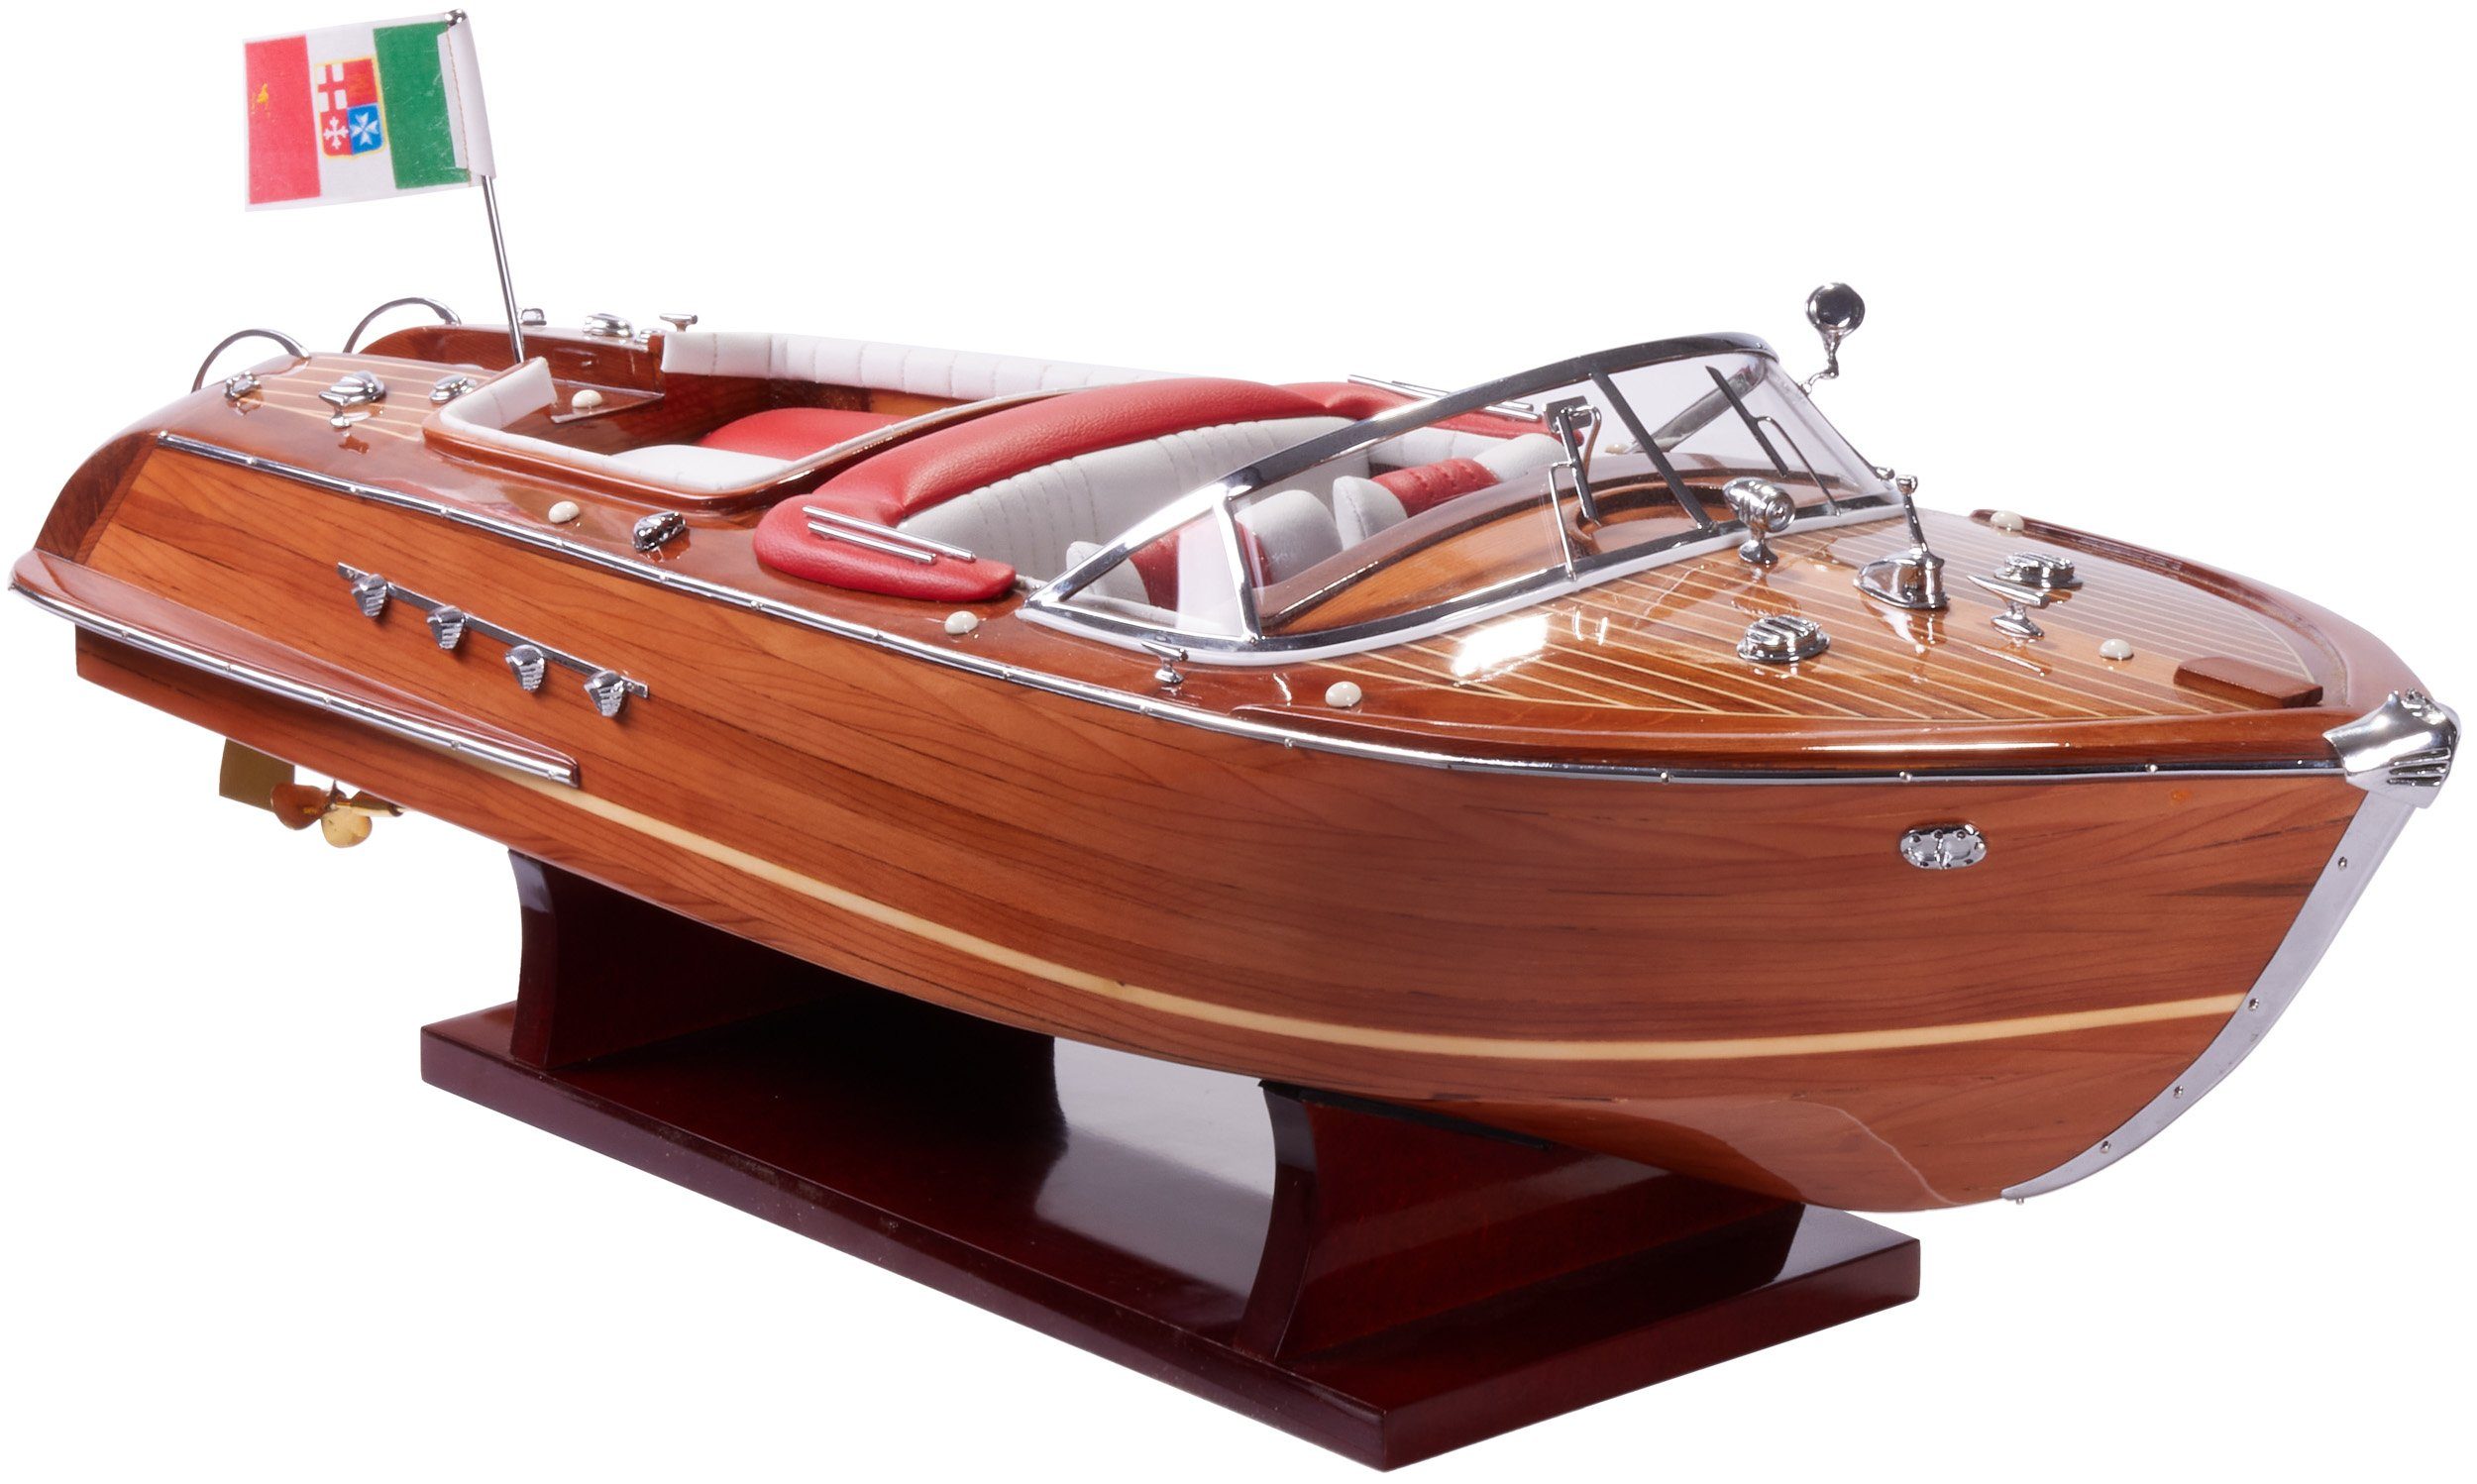 Holz Modellboot Italienisches Motorboot Größe 35 x 11 x 13 cm Boot Modell 